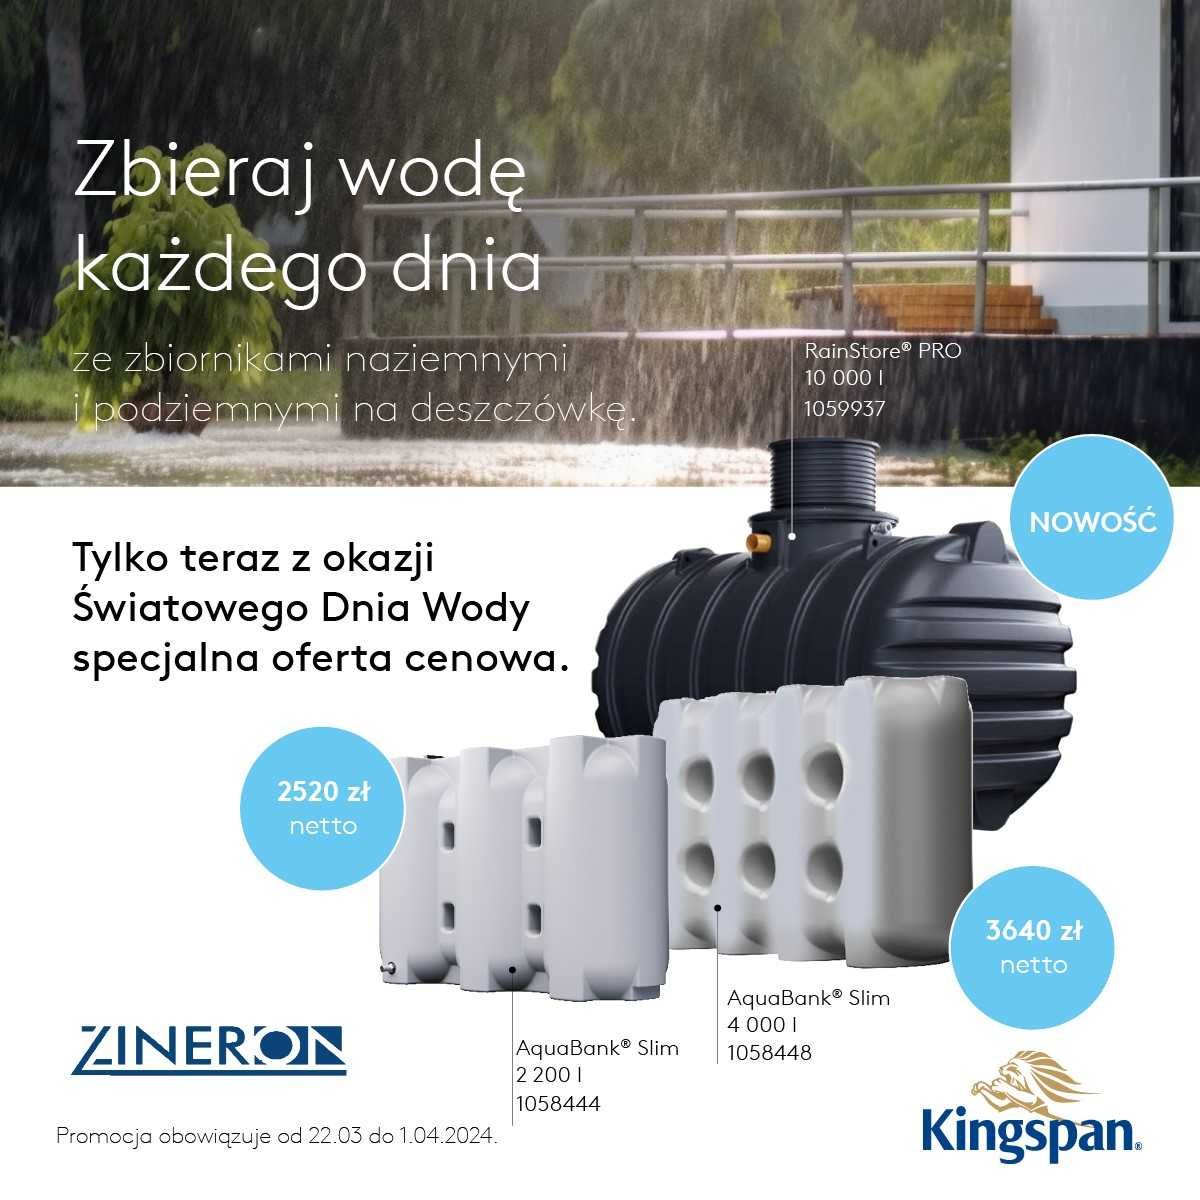 Zbiornik Kingspan AquaBank 4000l Woda Deszczowa Deszczówka Woda